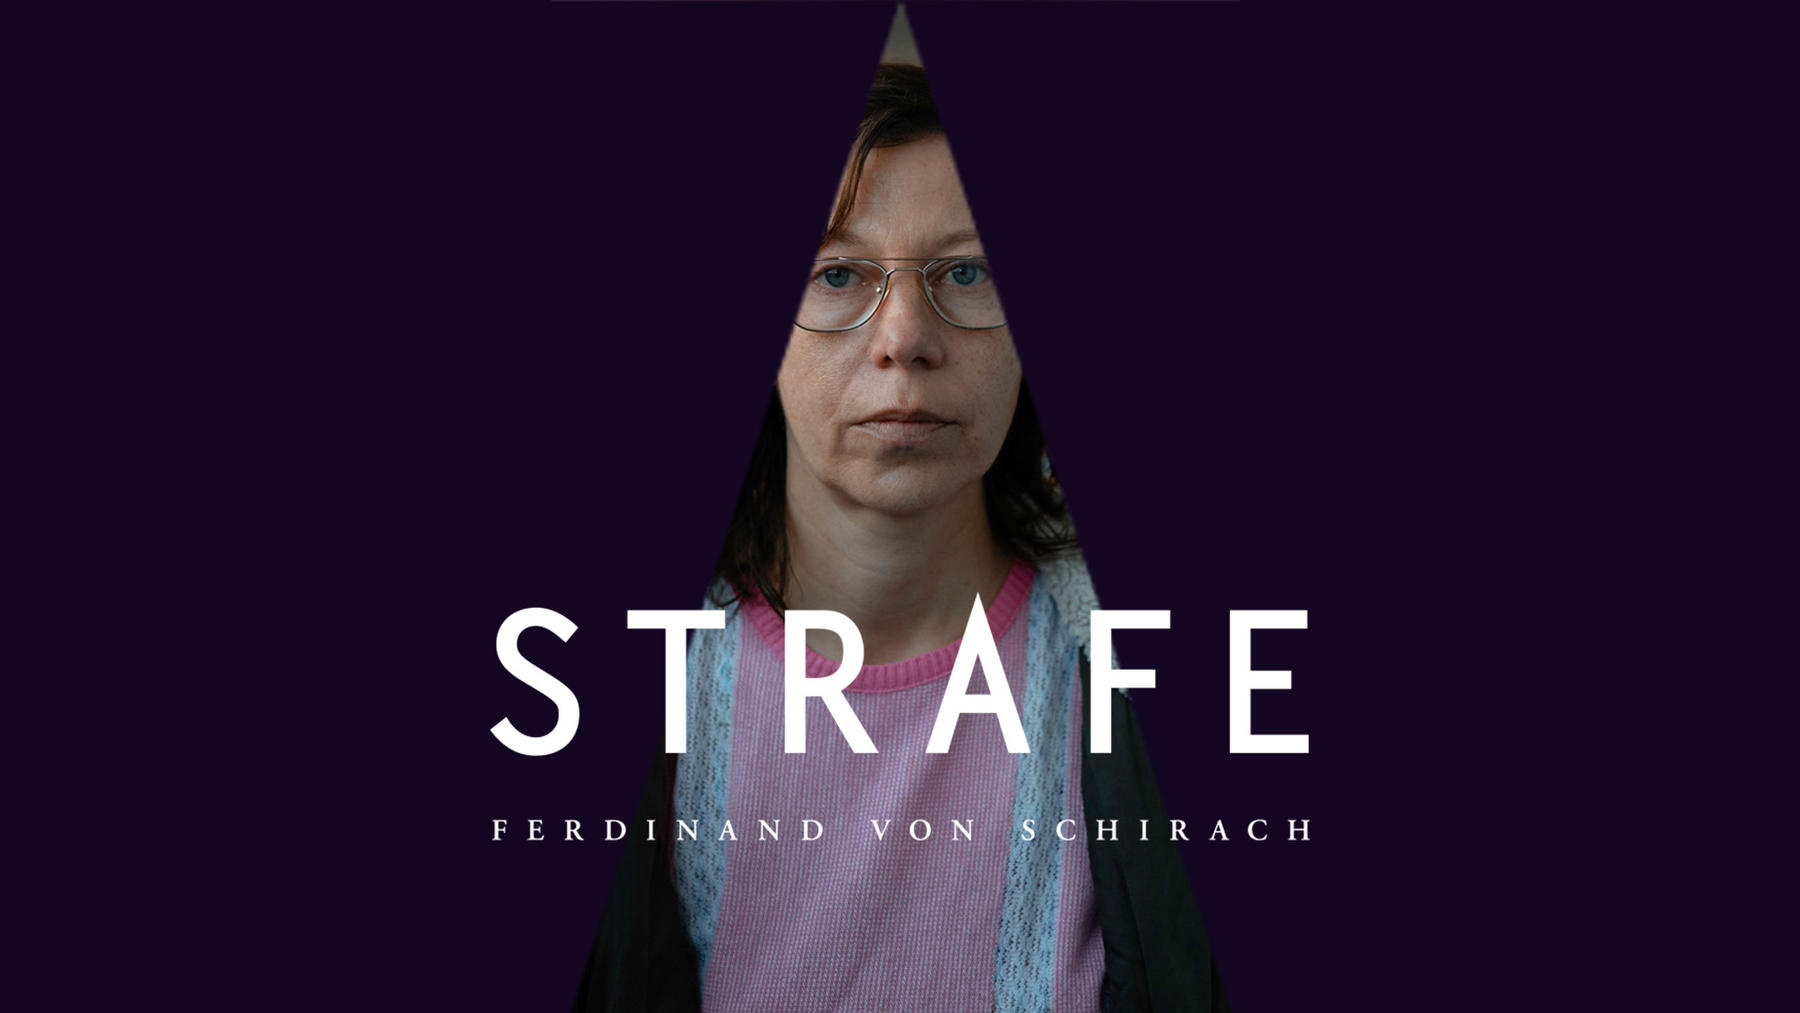 Folge 5 vom 28.06.2022 | Ferdinand von Schirach: Strafe | Staffel 1 | RTL+